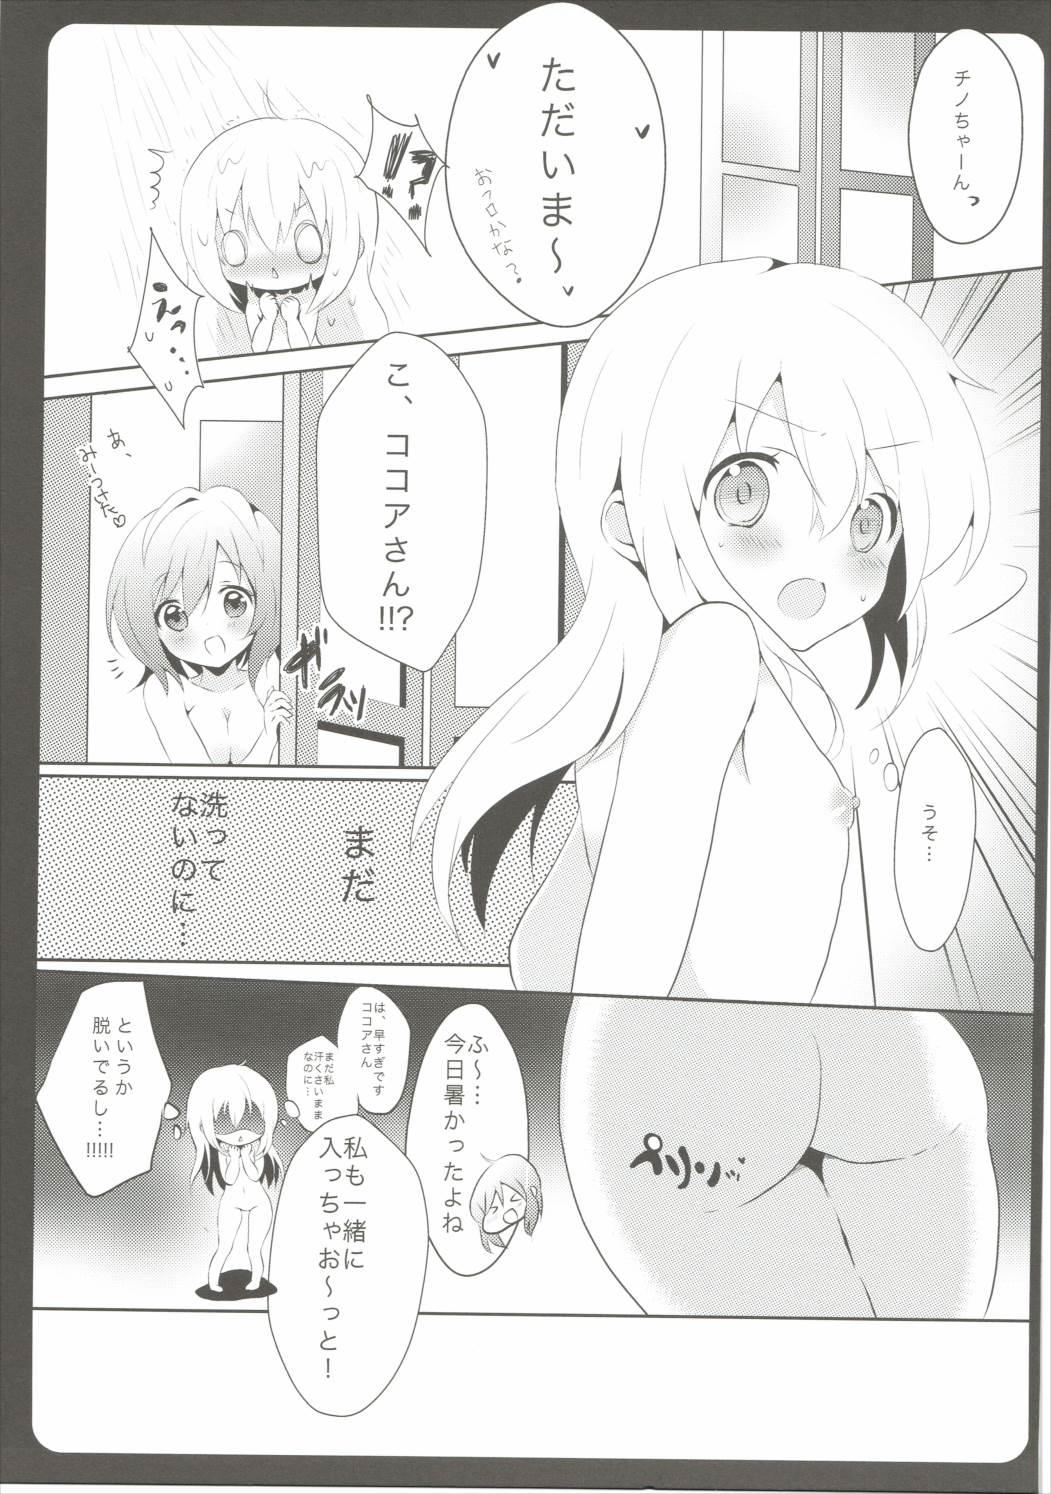 Playing Onee-chan ga Aratte Ageru - Gochuumon wa usagi desu ka Petite - Page 8